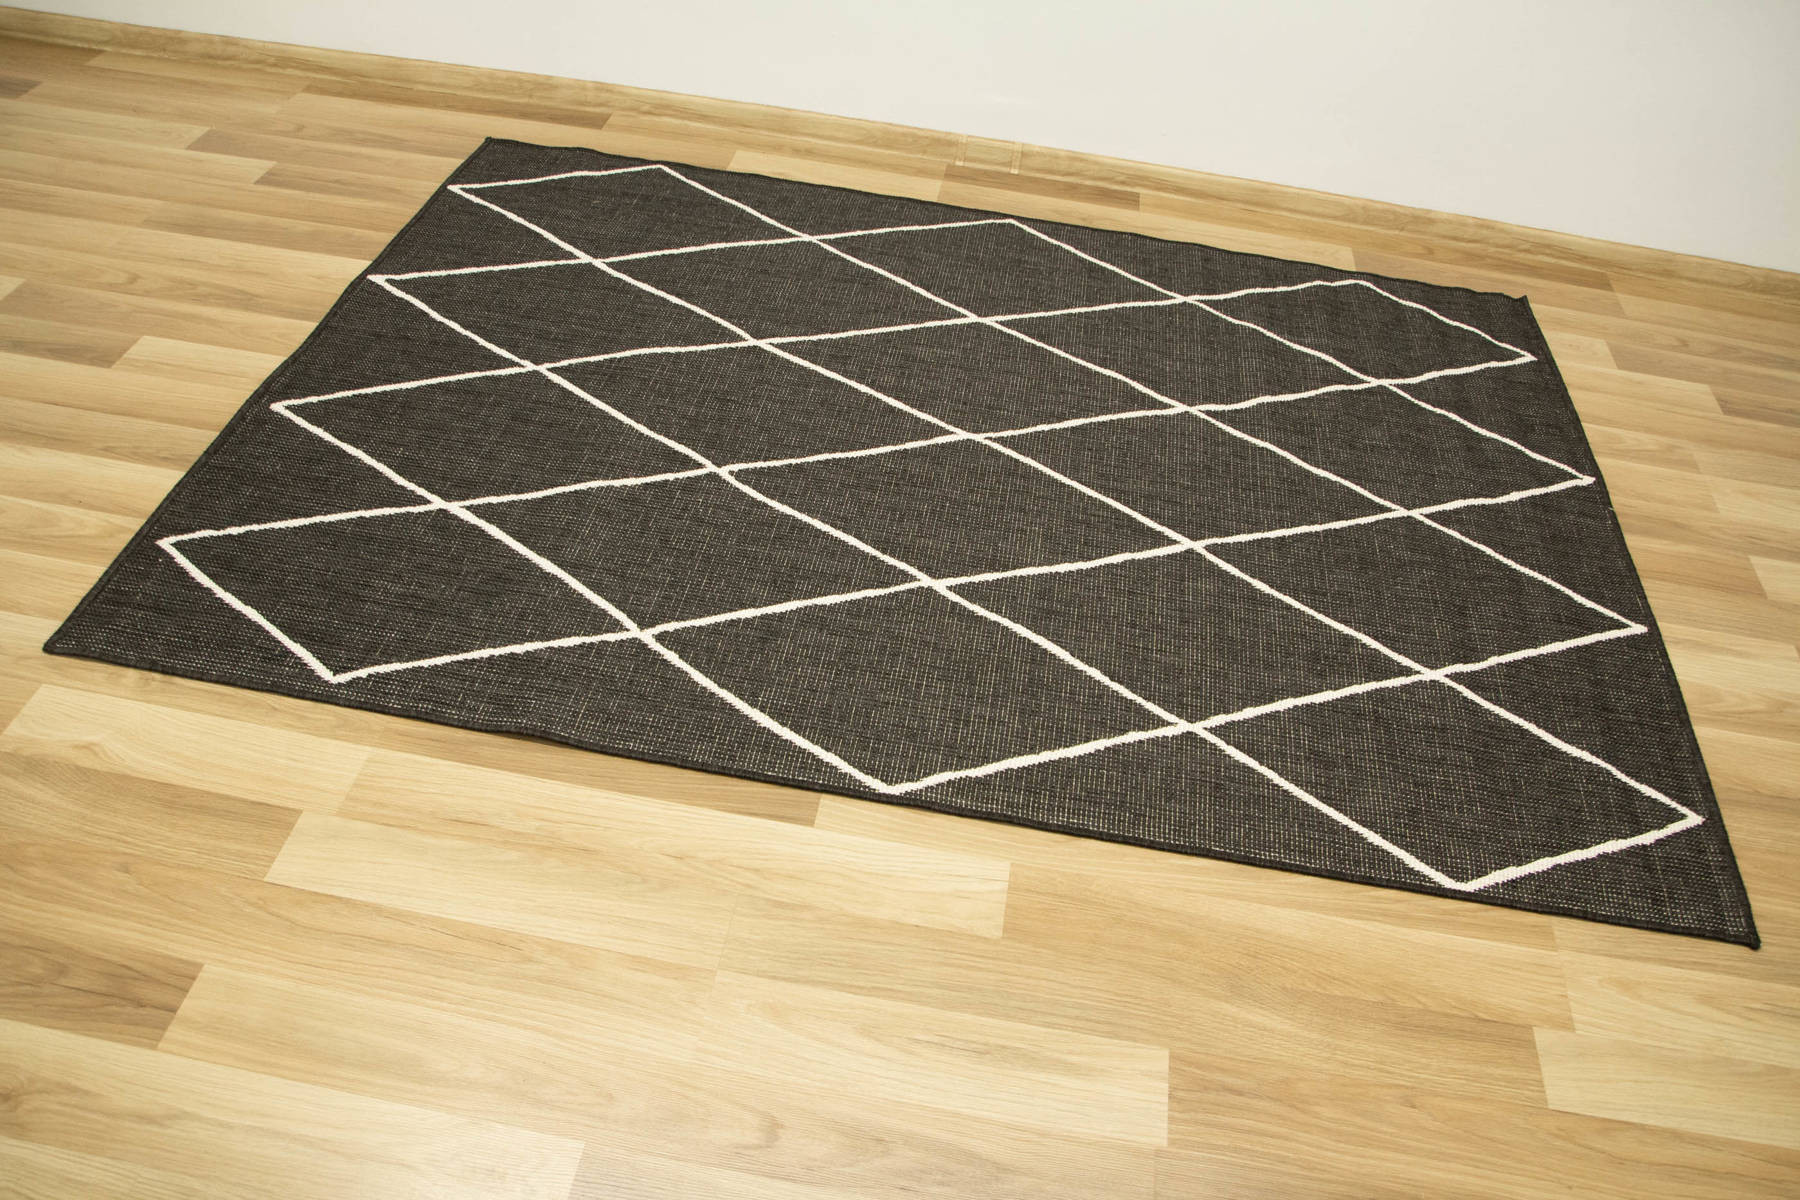 Šnúrkový obojstranný koberec Brussels 205628/10110 antracitový/krémový